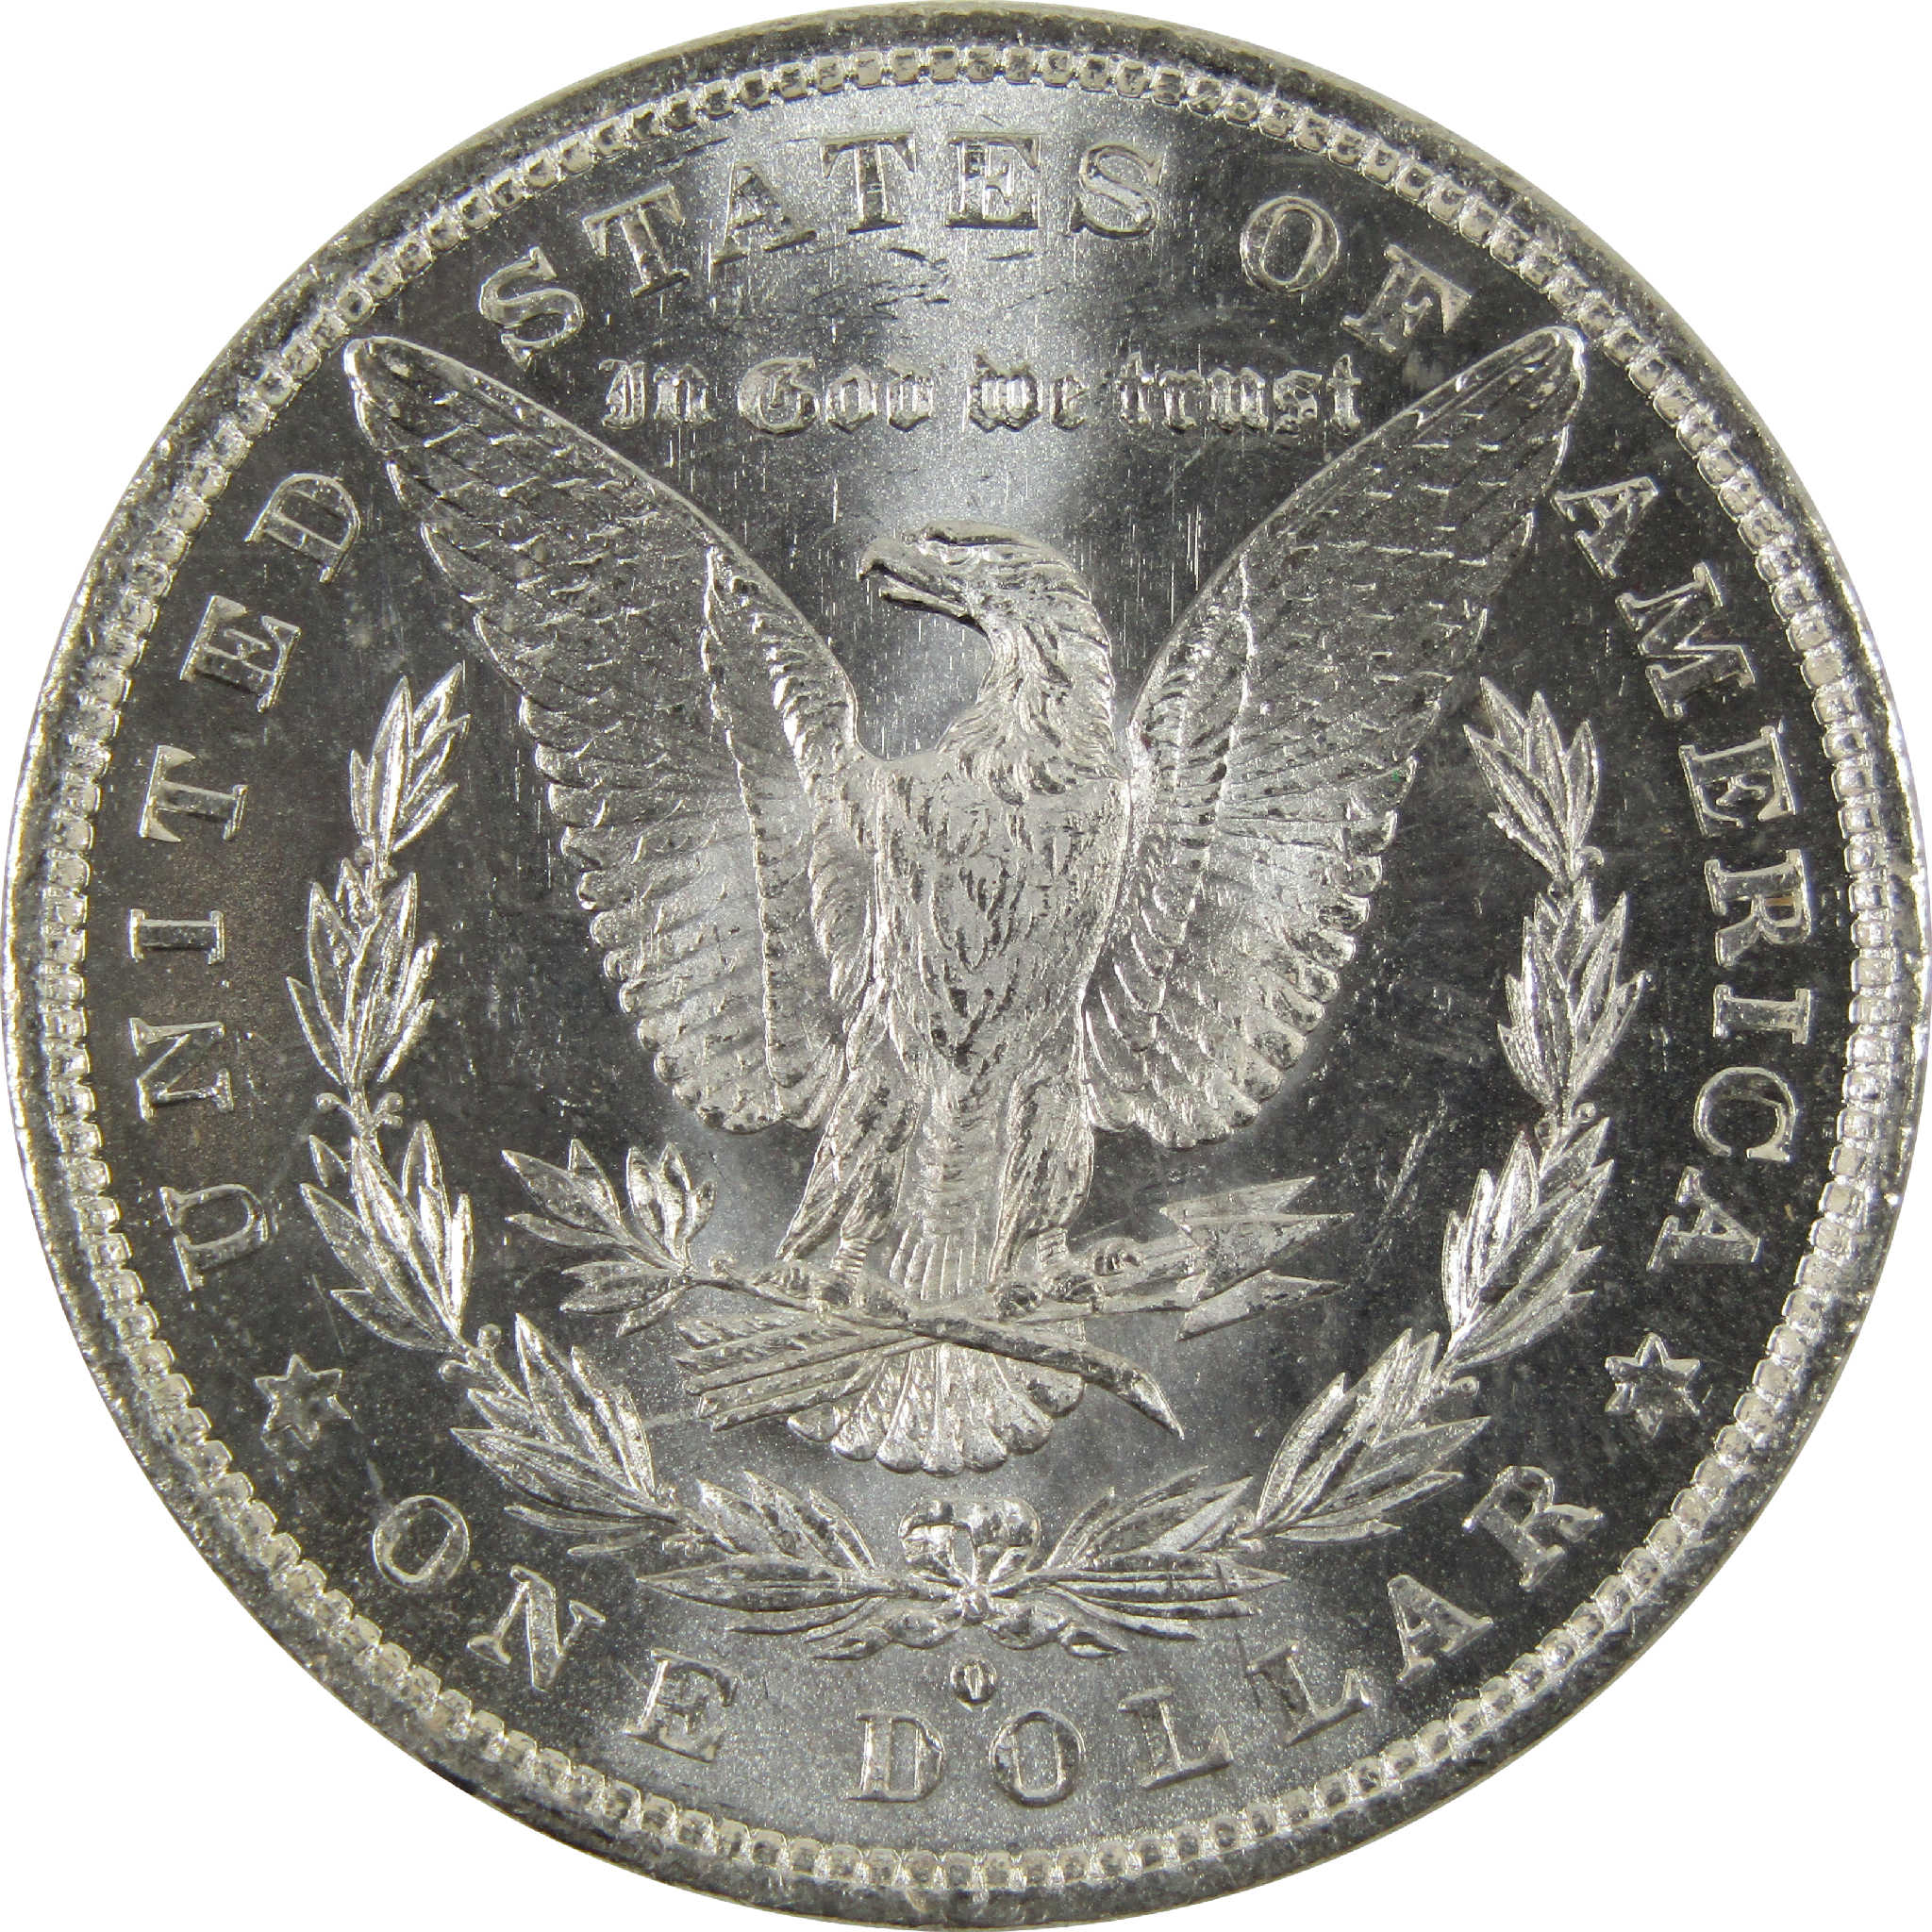 1882 O Morgan Dollar BU Uncirculated 90% Silver $1 Coin SKU:I8907 - Morgan coin - Morgan silver dollar - Morgan silver dollar for sale - Profile Coins &amp; Collectibles